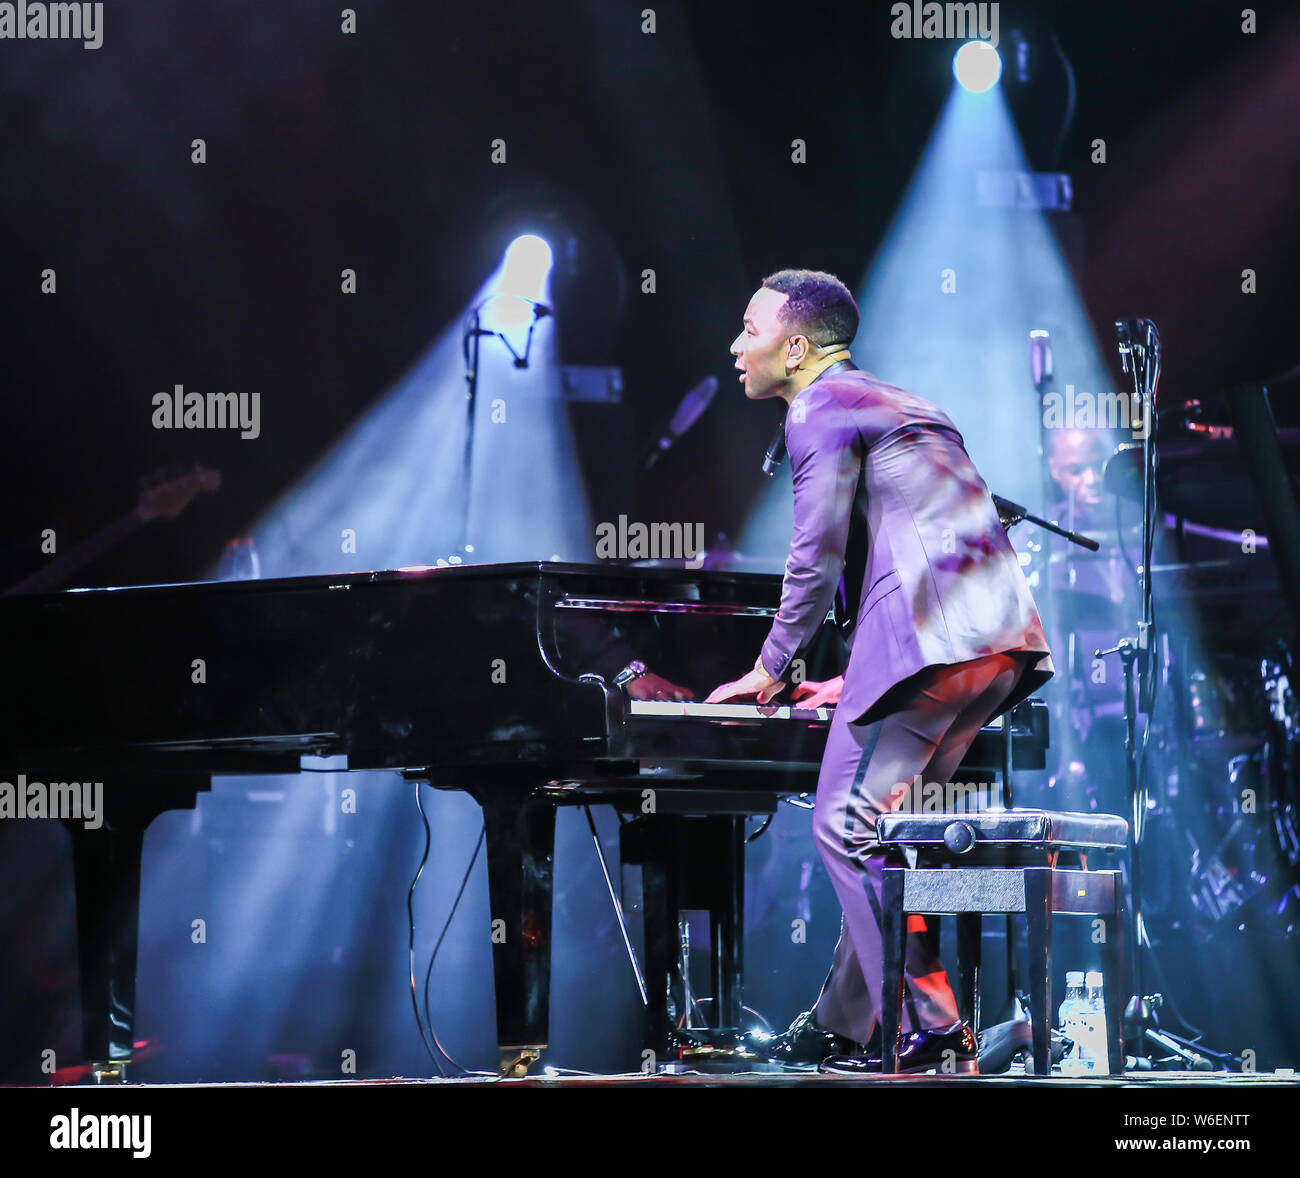 Cantante y actor estadounidense Roger John Stephens, conocido profesionalmente como John Legend, realiza en un concierto en Shanghai, China, 8 de marzo de 2018. Foto de stock